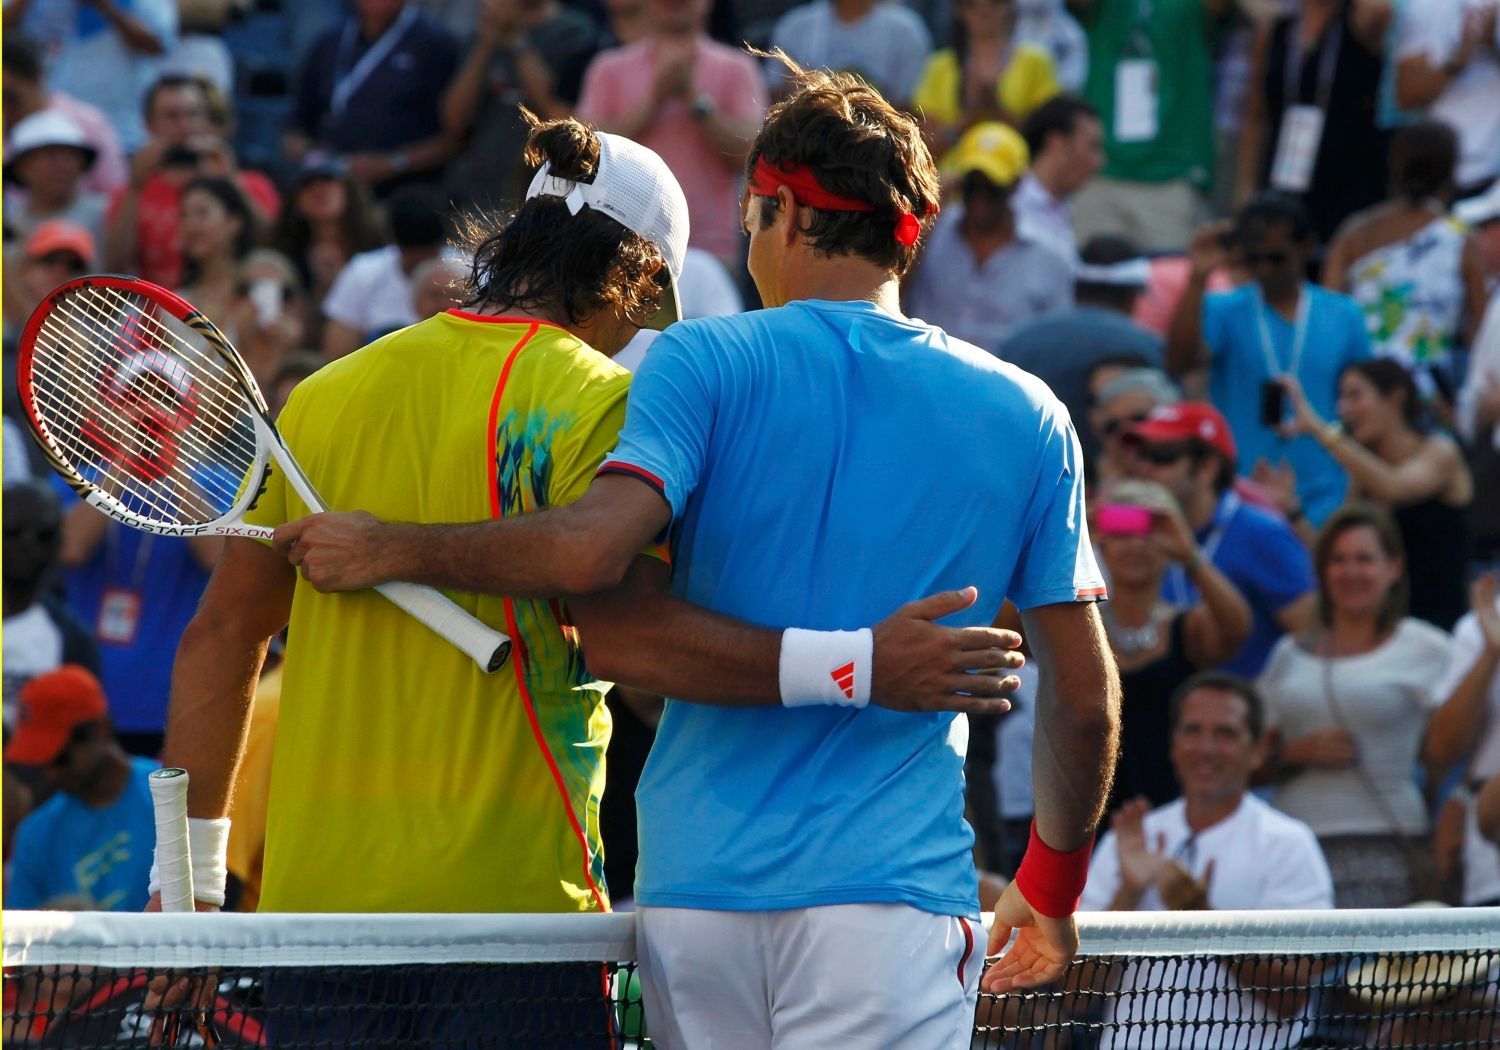 Švýcarský tenista Roger Federer utěšuje poraženého Španěla Fernanda Verdasca ve 3. kole US Open 2012.